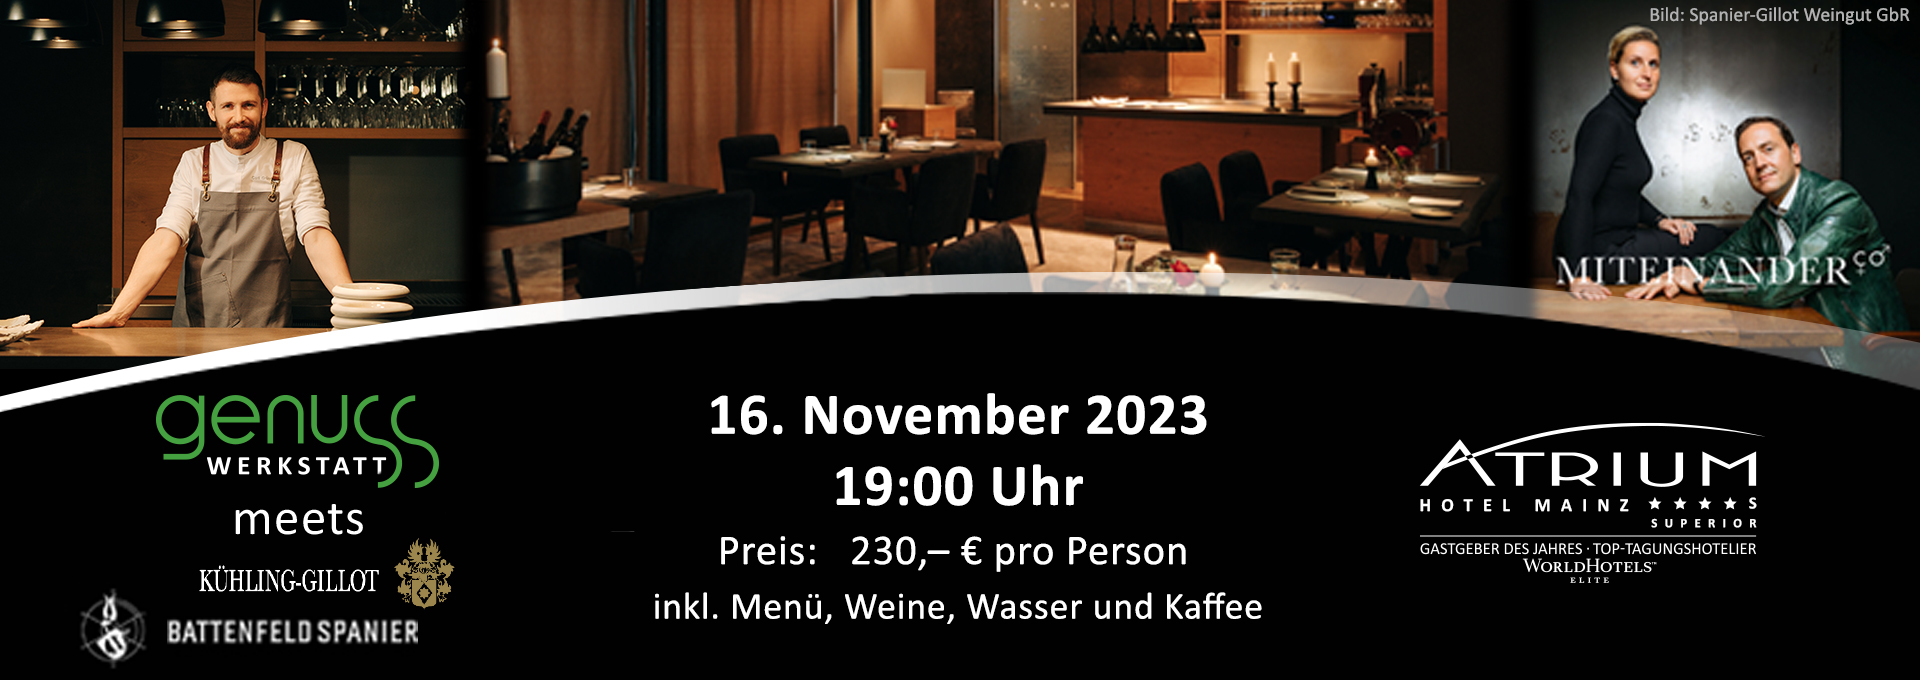 Banner Event GenussWerkstatt im November mit Kühling-Gillot und Battenfeld-Spanier